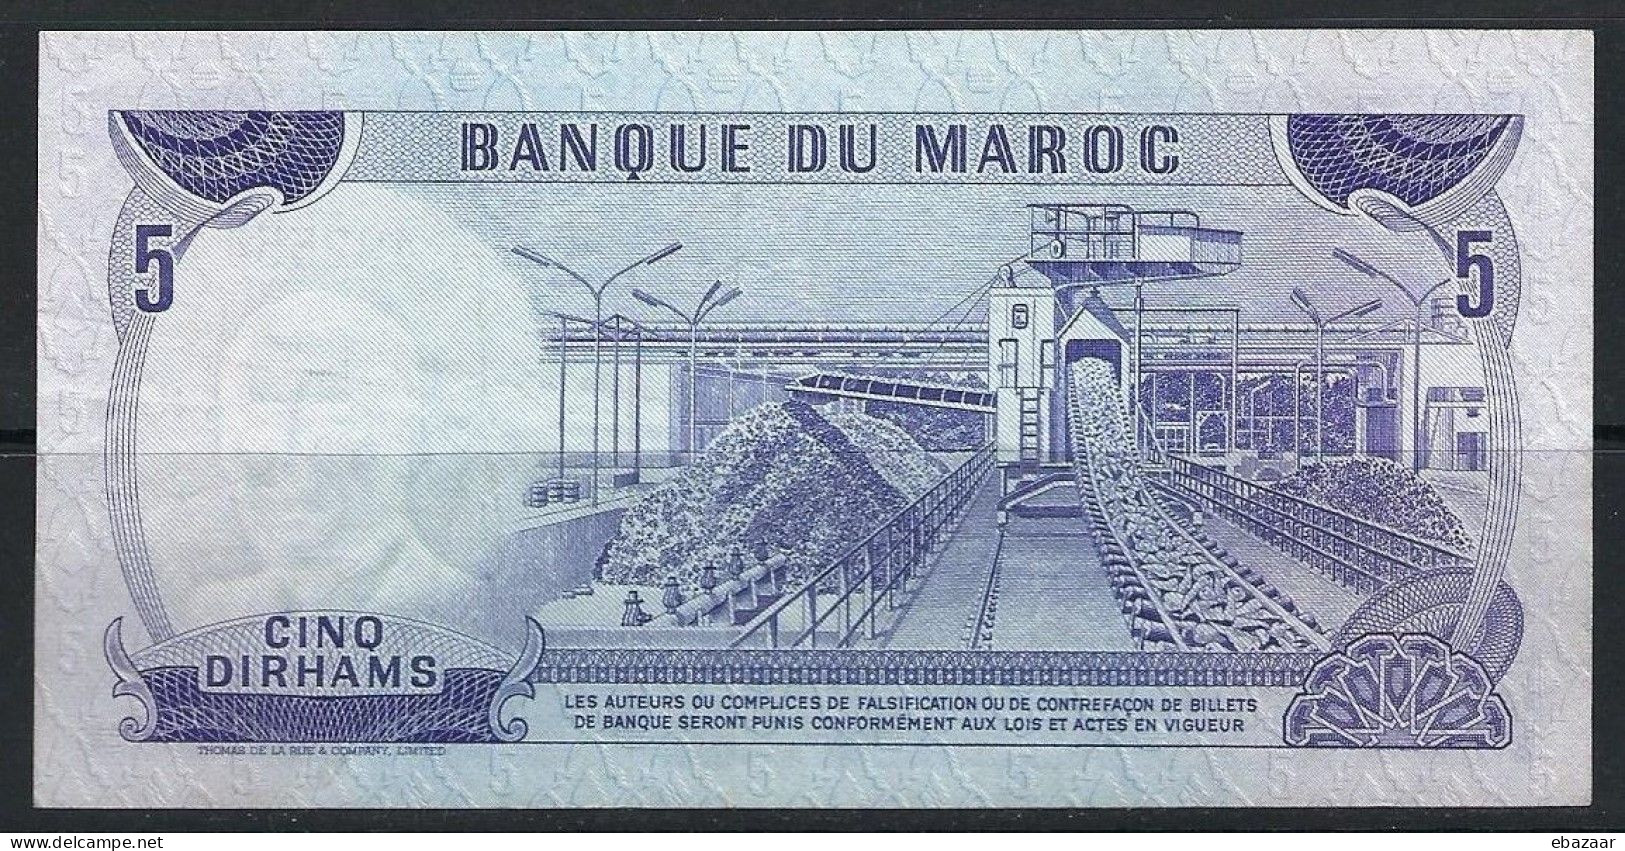 Morocco 1970 Banque Du Maroc 5 Dirhams Banknote P-56a VF++ Crisp - Maroc